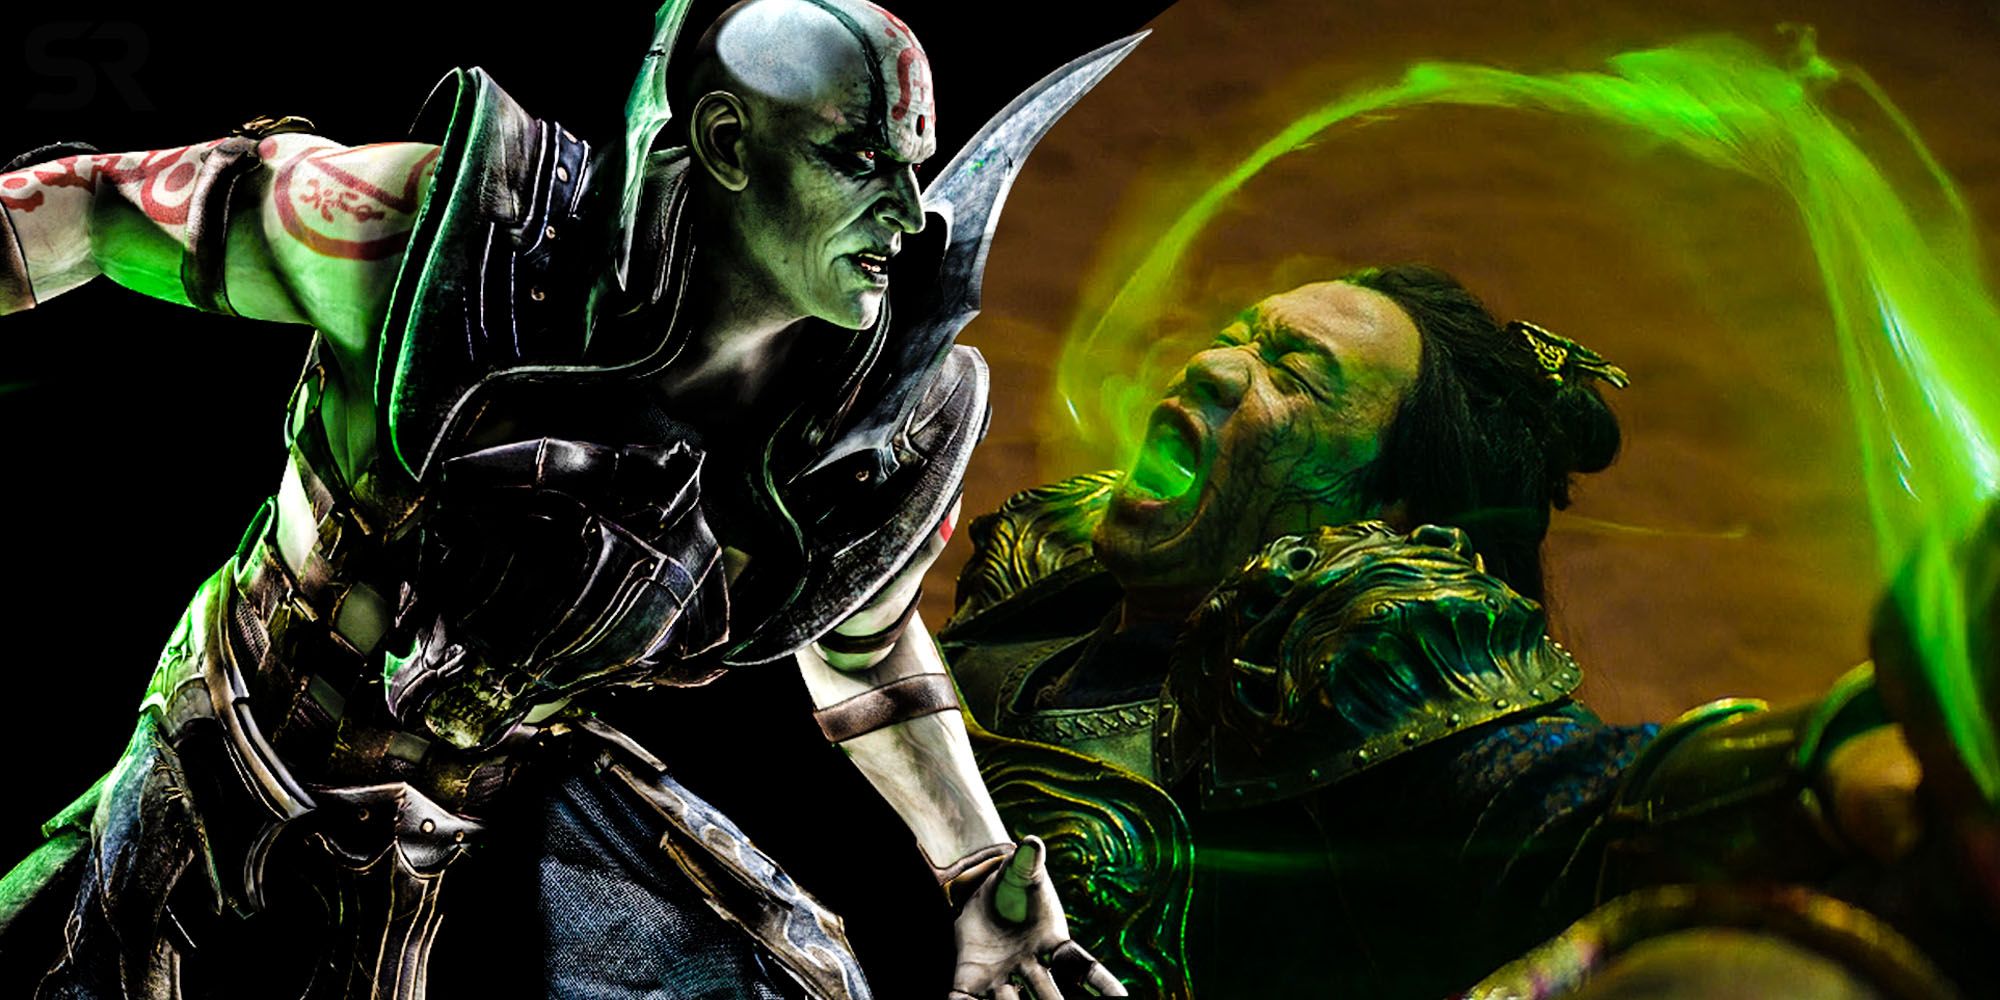 Mortal Kombat 2 casts its Shao Kahn, Quan Chi, and more